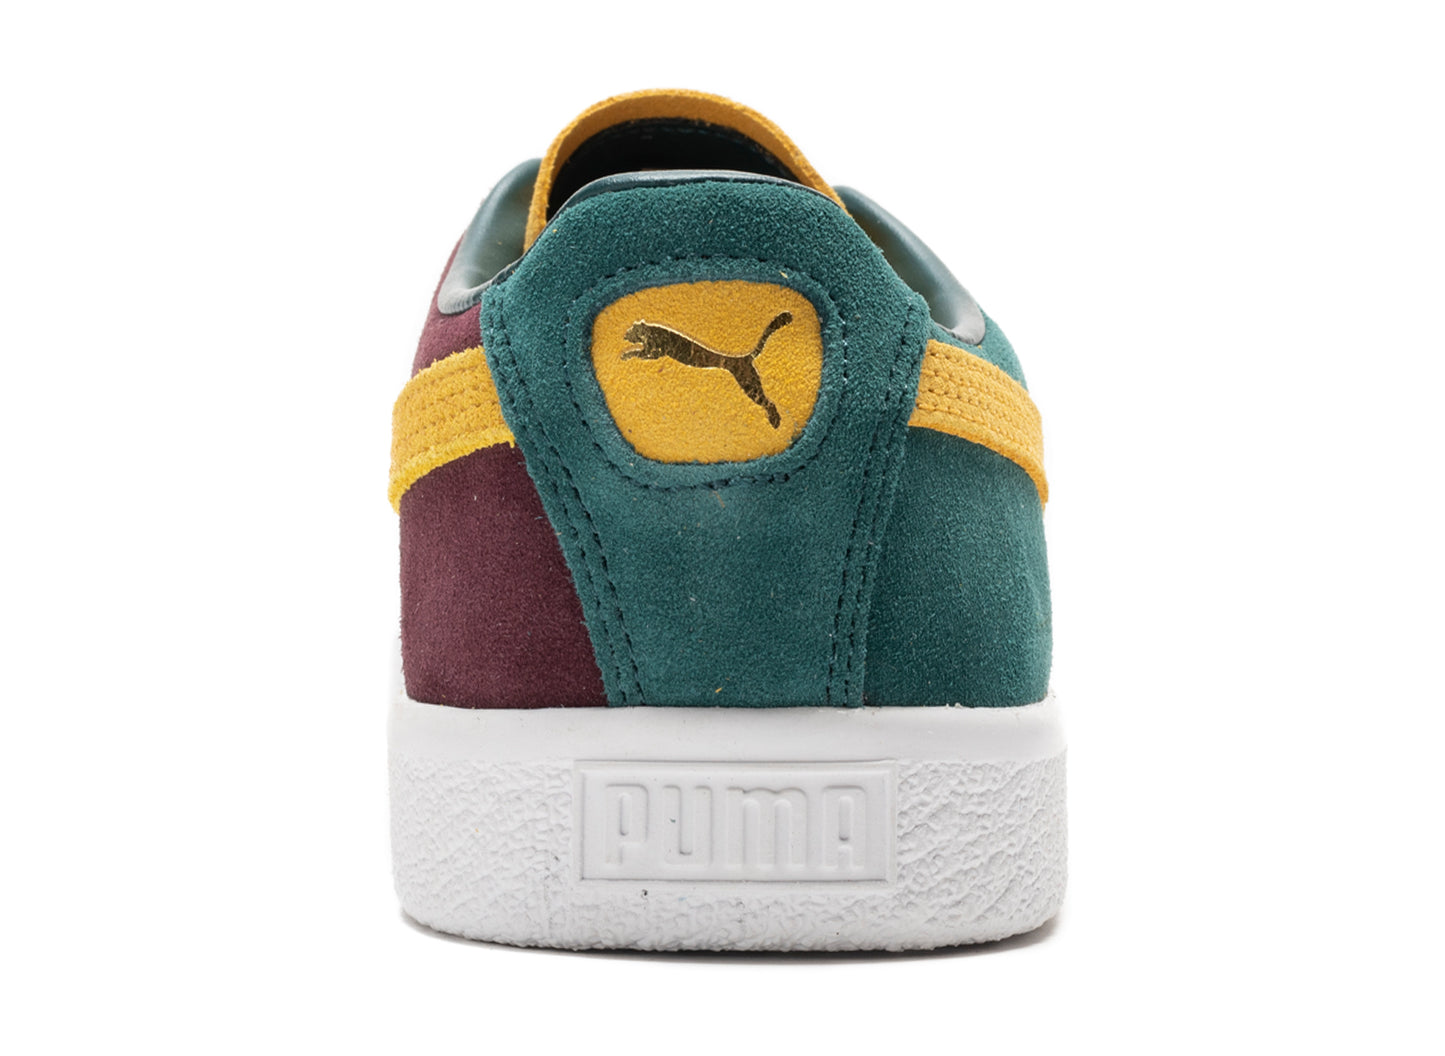 Puma Suede Vintage Teams